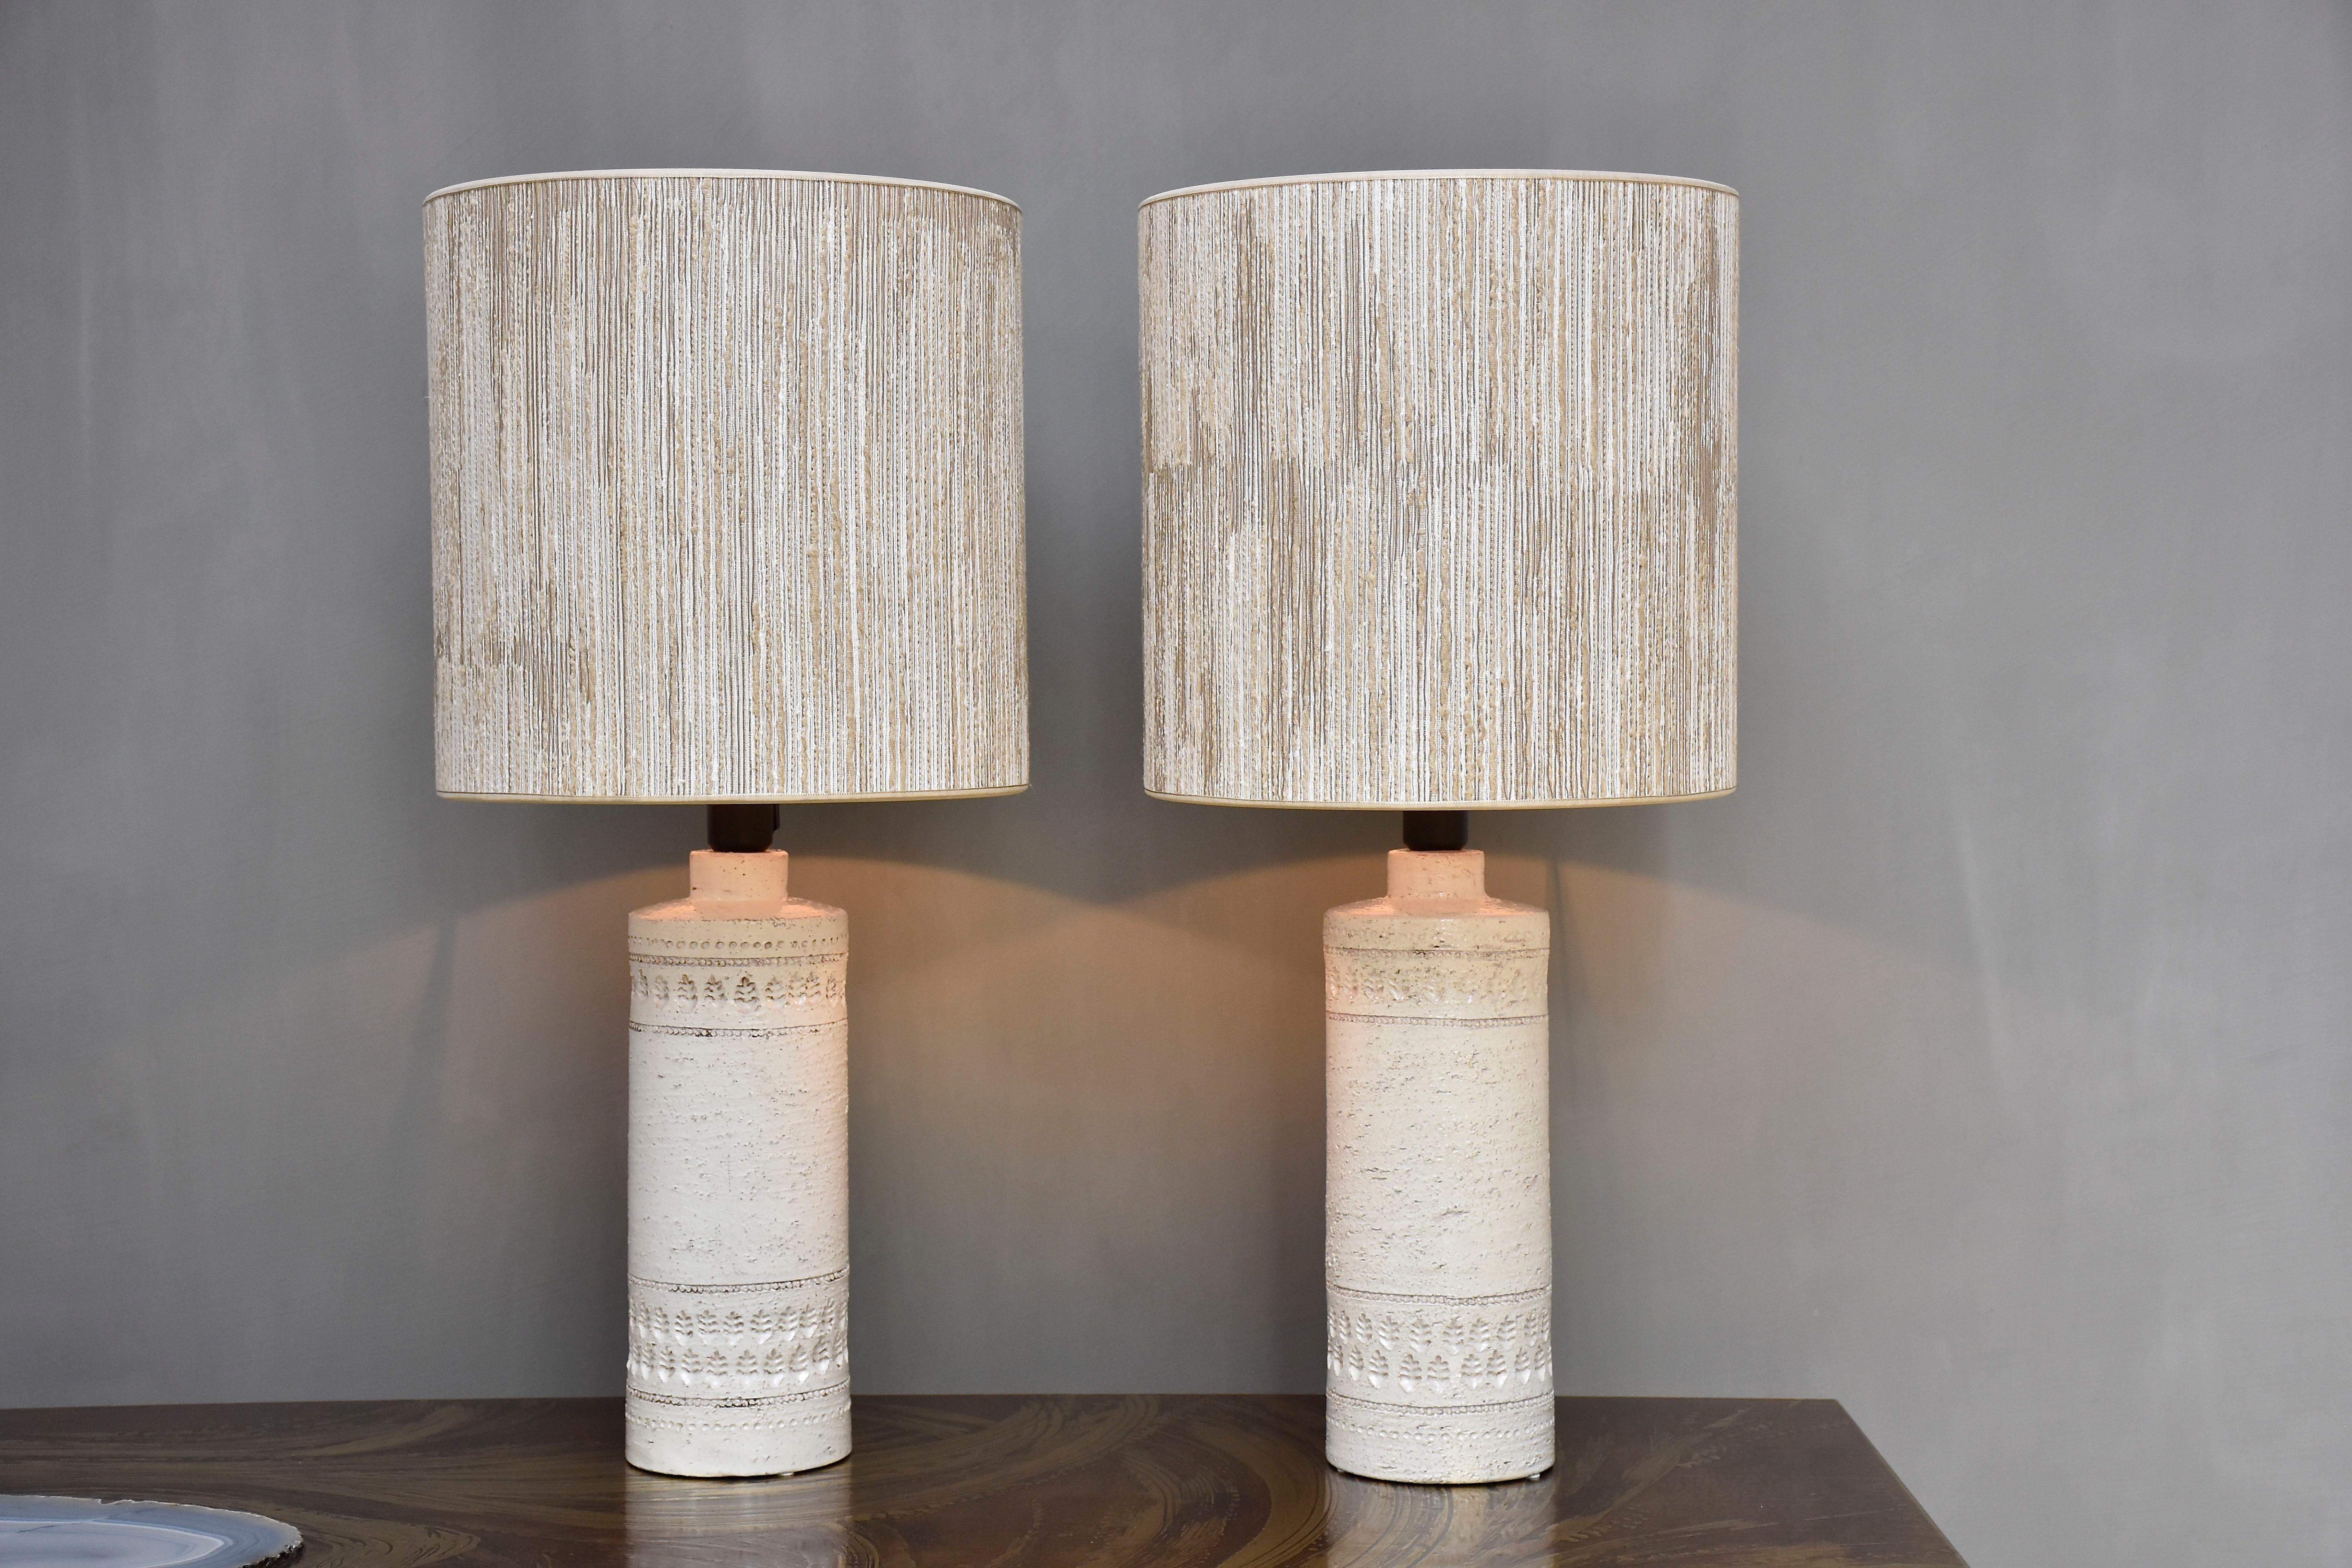 Magnifique paire de lampes de table en céramique conçue par Bitossi pour Bergboms- Suède.
Ces jolies lampes sont dotées d'une base émaillée blanche avec  la texture et les paternes.
Période - vers 1960
Lieu d'origine - Italie/ Suède

Abat-jour neuf,